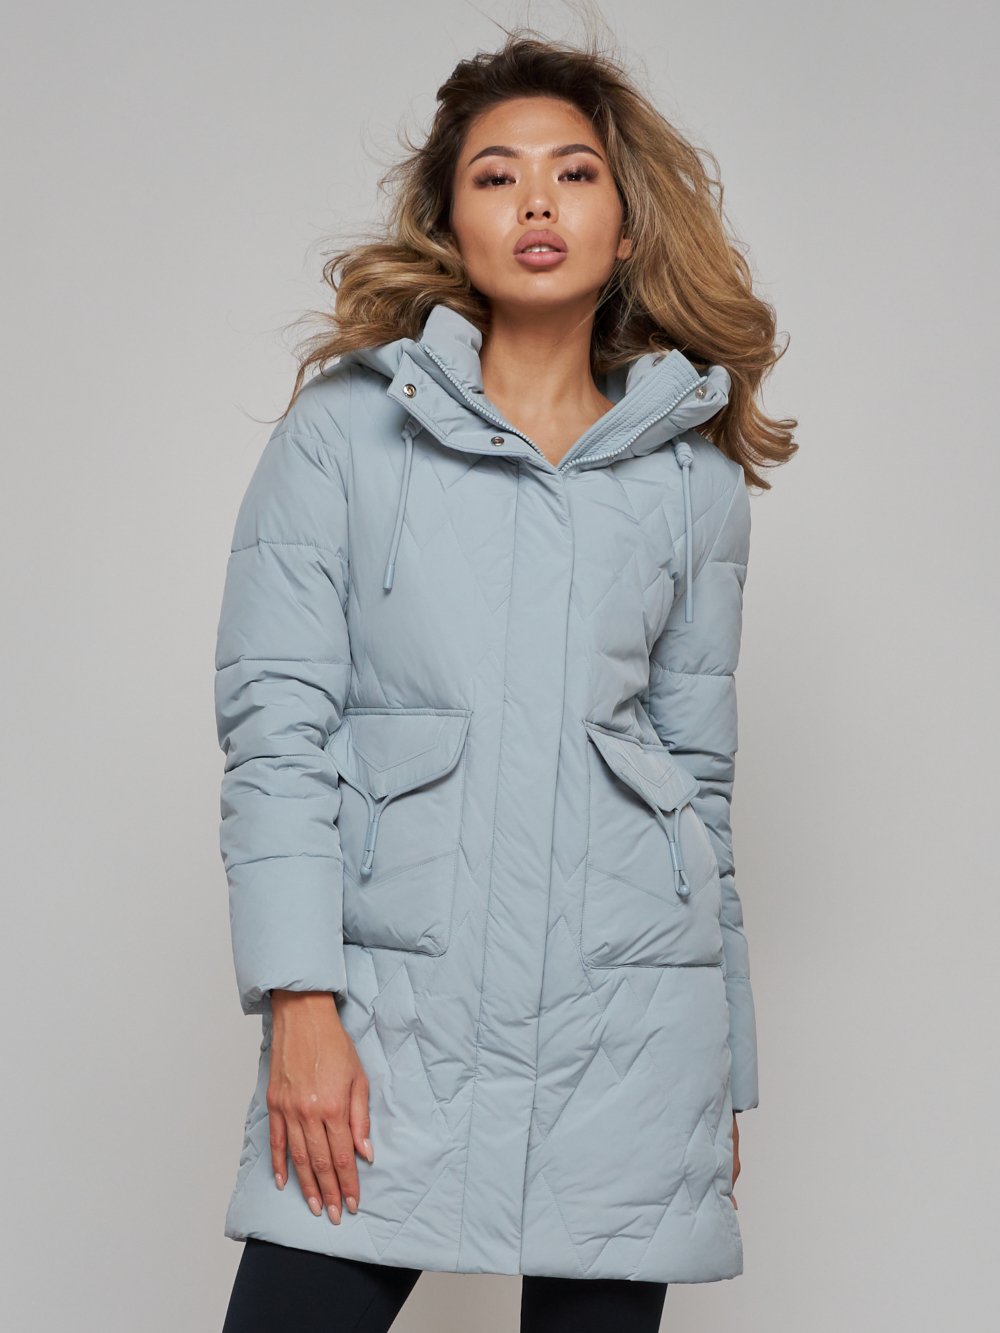 Купить куртку женскую оптом от производителя недорого в Москве 586832Br 1